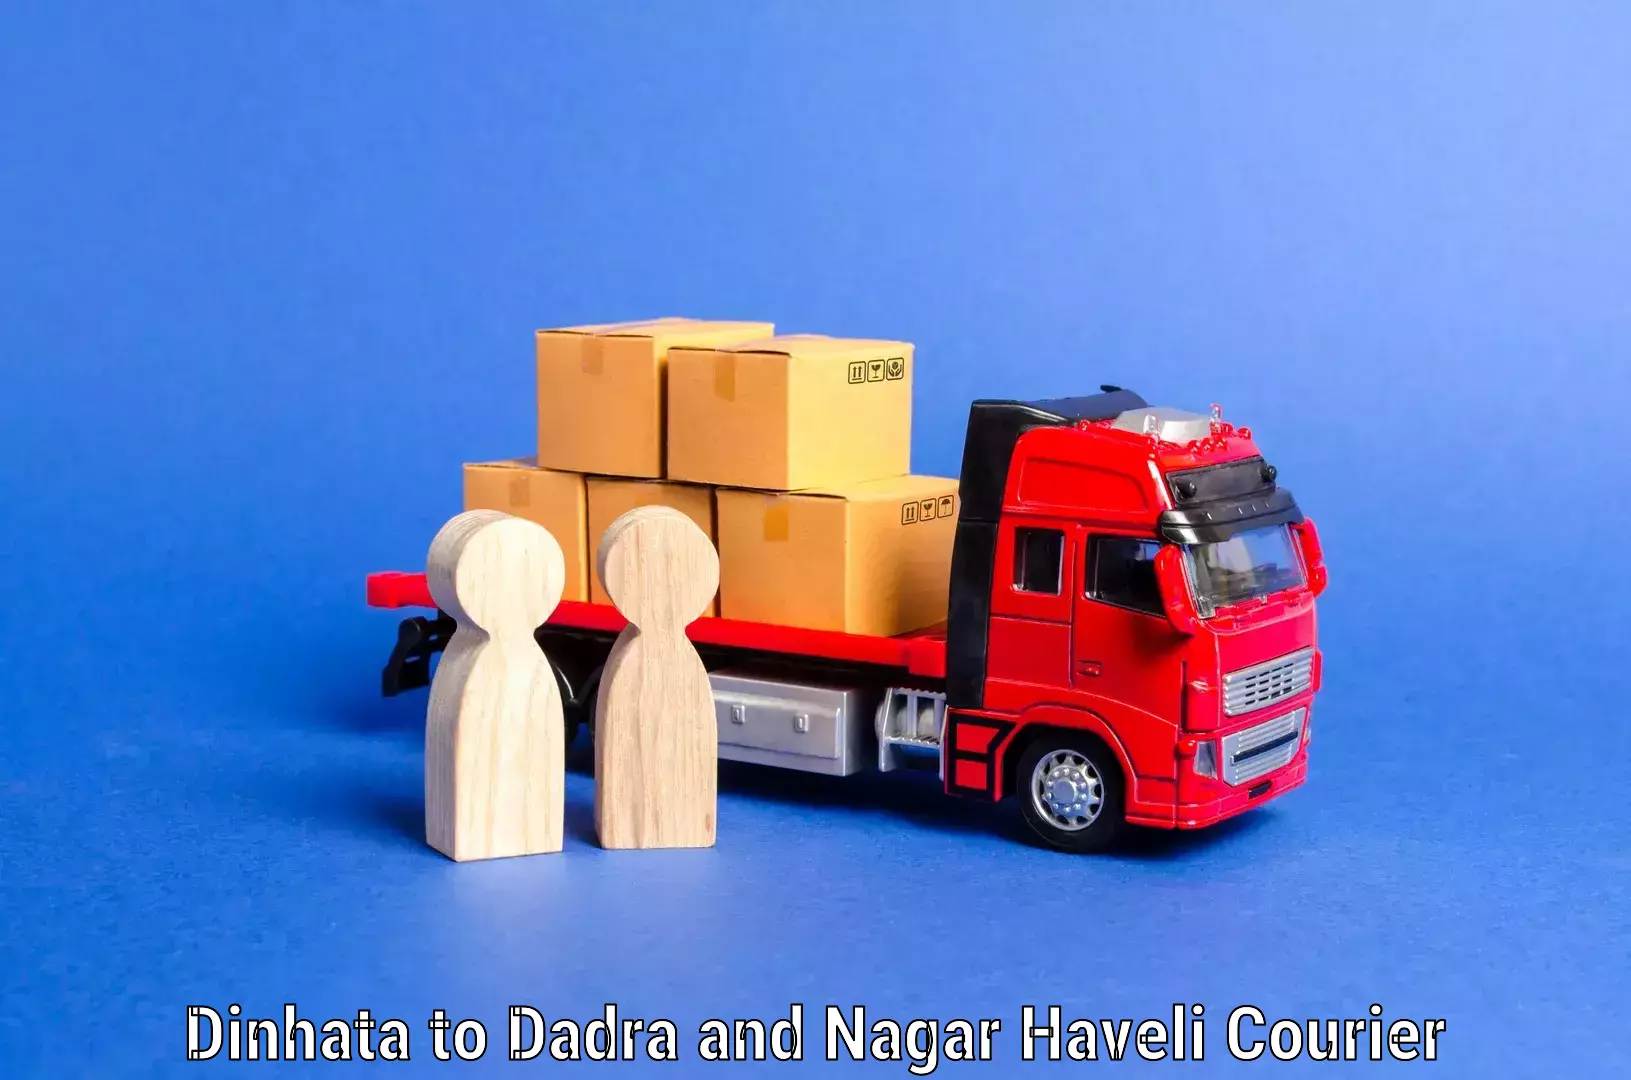 Home relocation services Dinhata to Dadra and Nagar Haveli